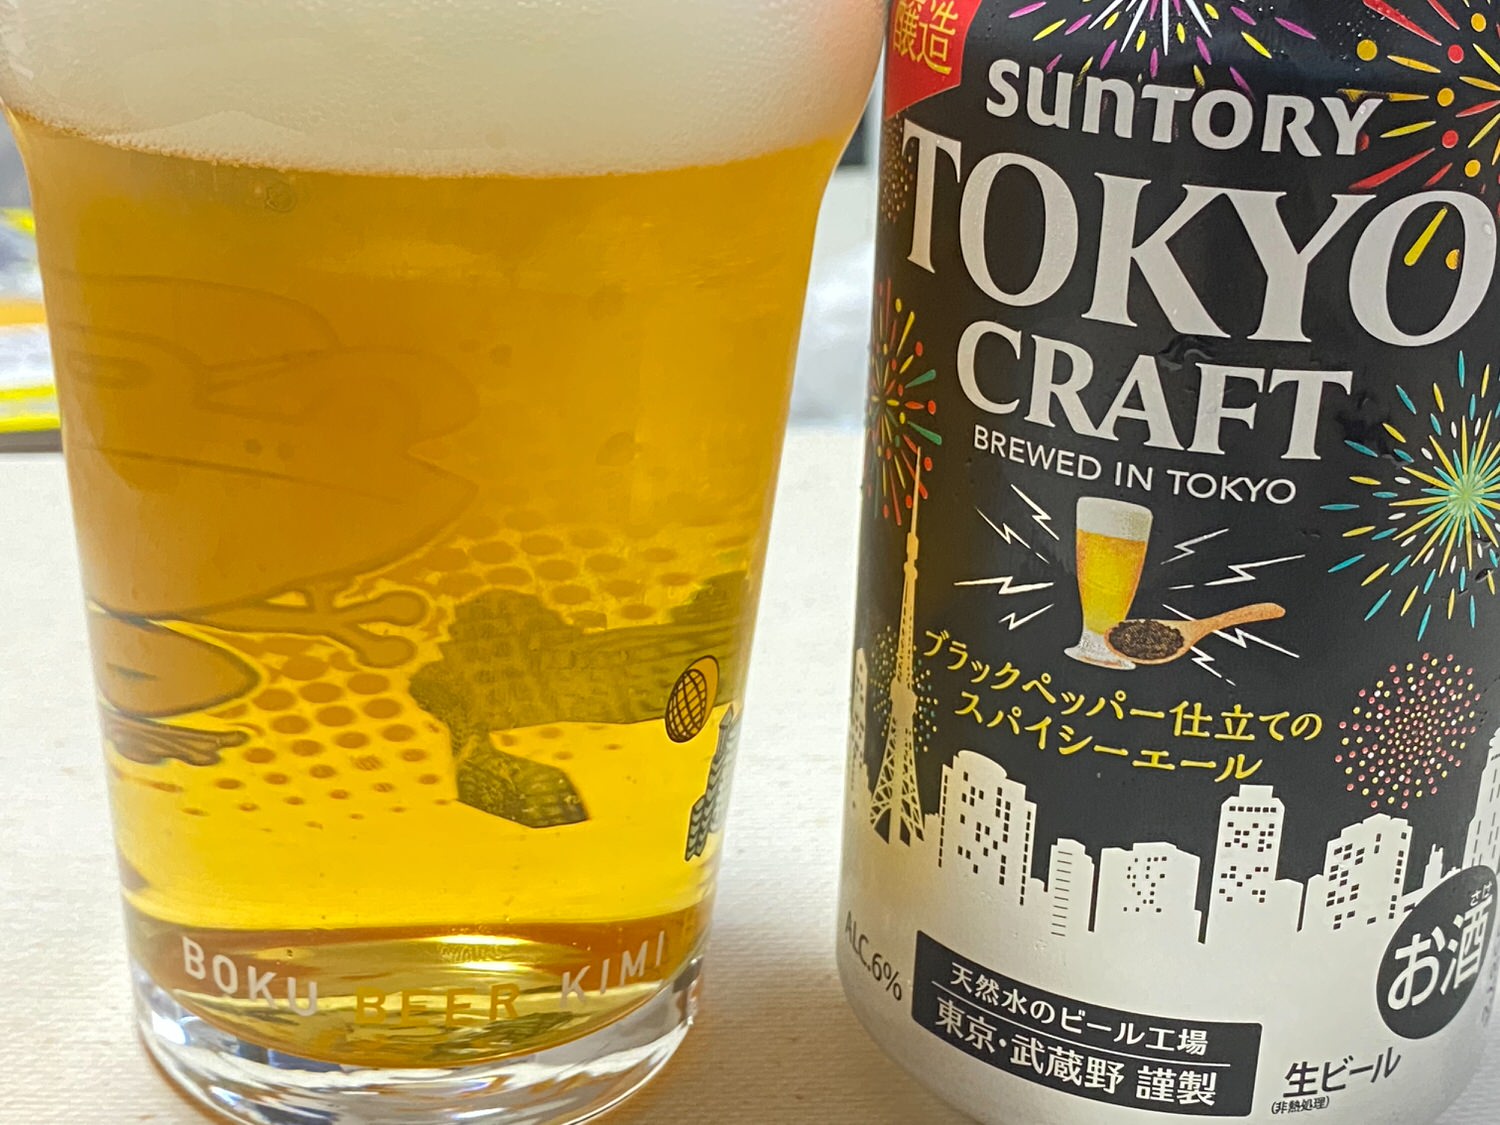 Tokyo craft spicy ale 09 04